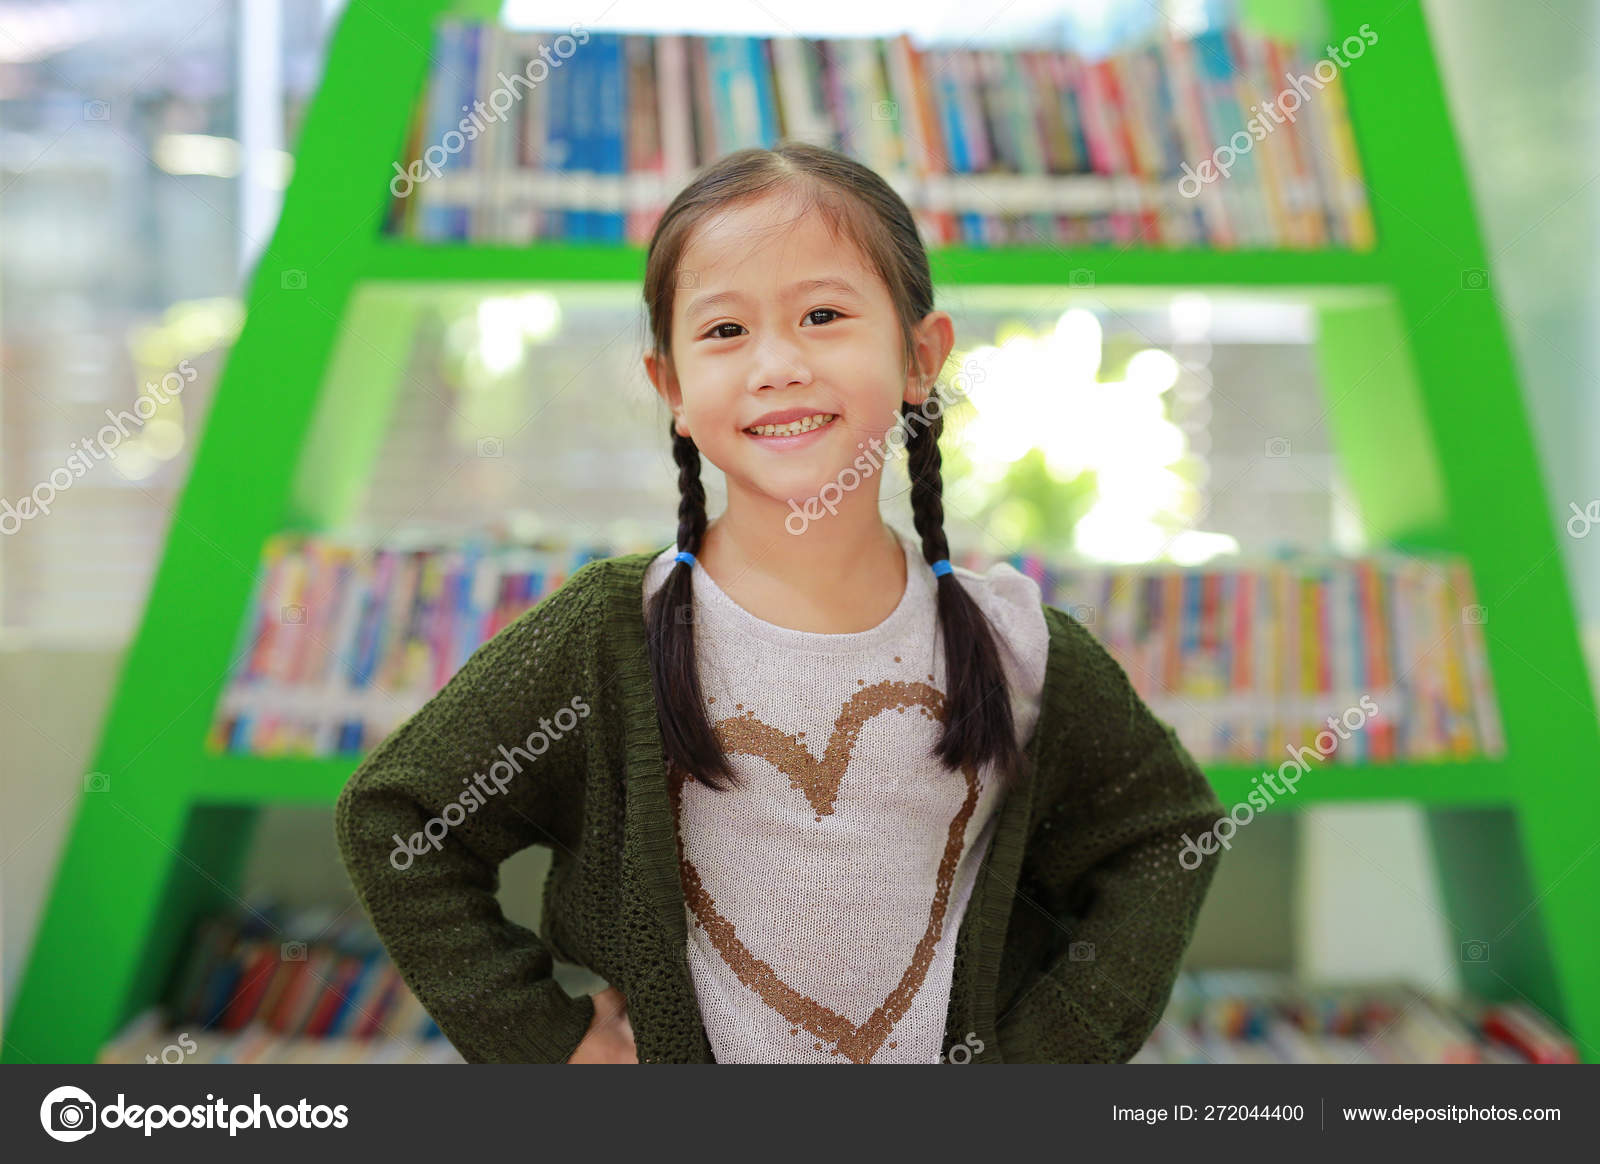 Smiling Little Asian Child Girl Bookshelf Library Children